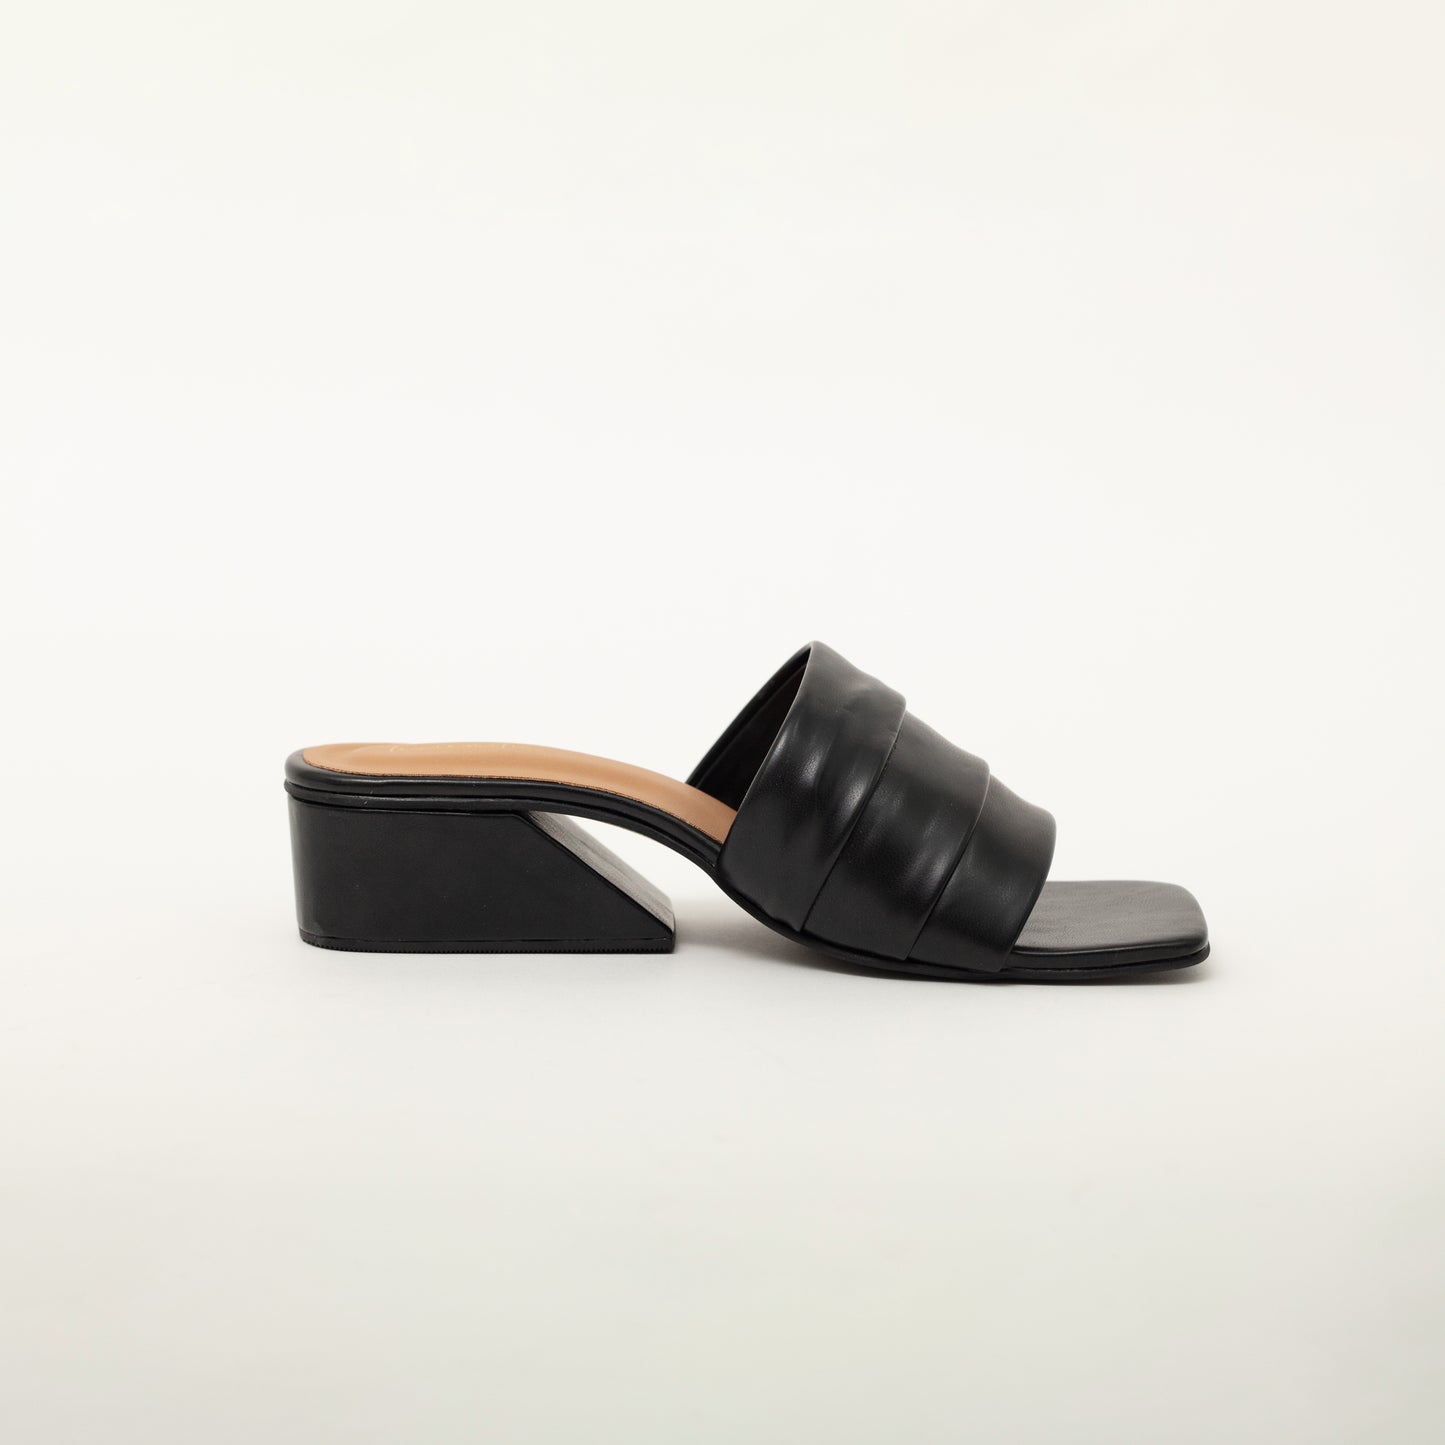 Kiara statement black block heels